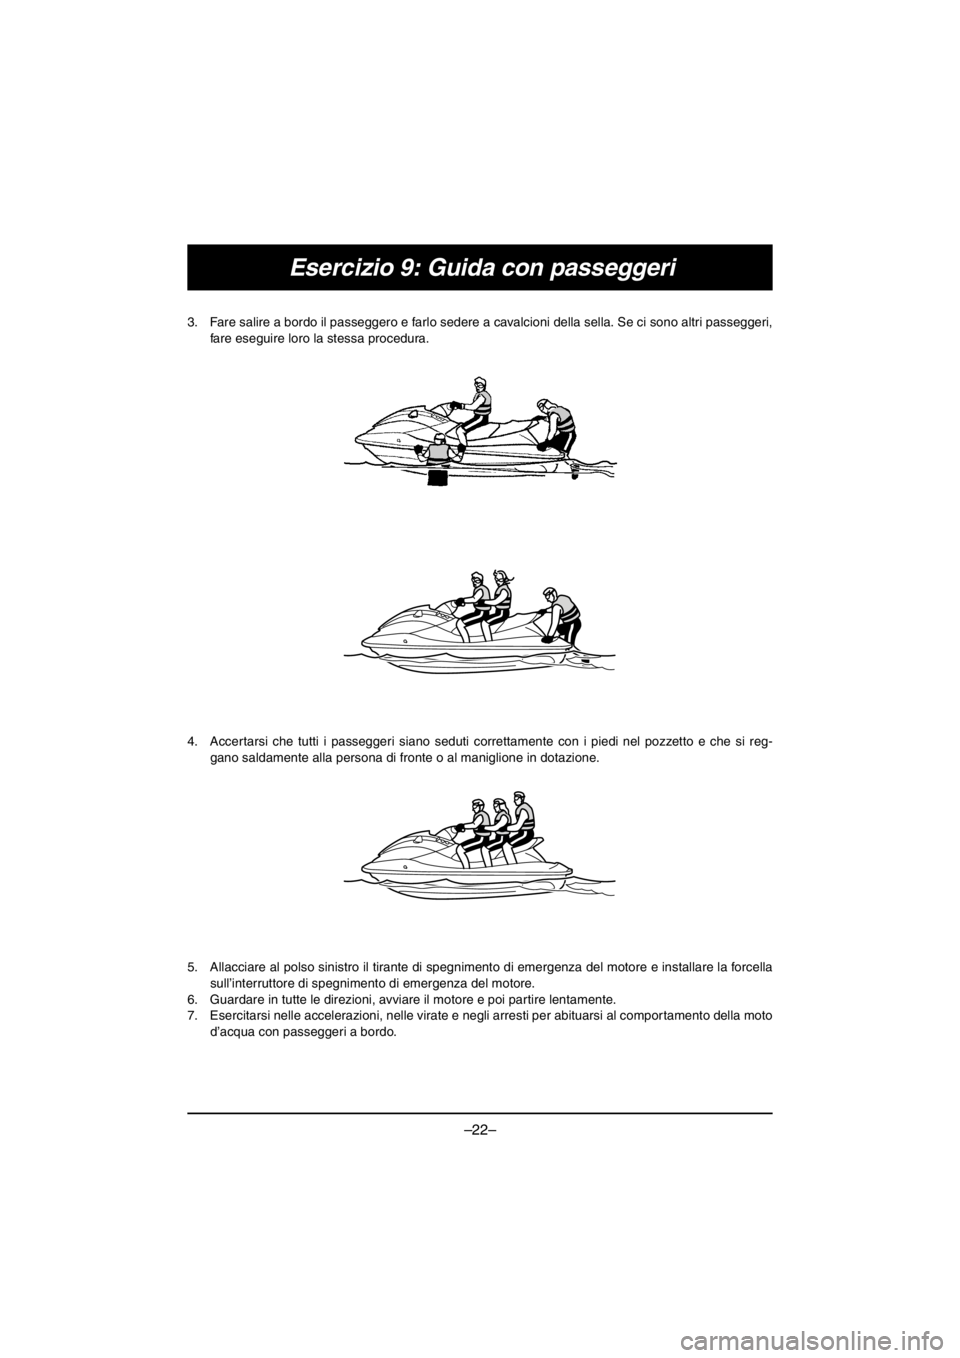 YAMAHA EX SPORT 2017  Manuale duso (in Italian) –22–
Esercizio 9: Guida con passeggeri
3. Fare salire a bordo il passeggero e farlo sedere a cavalcioni della sella. Se ci sono altri passeggeri,
fare eseguire loro la stessa procedura. 
4. Accert